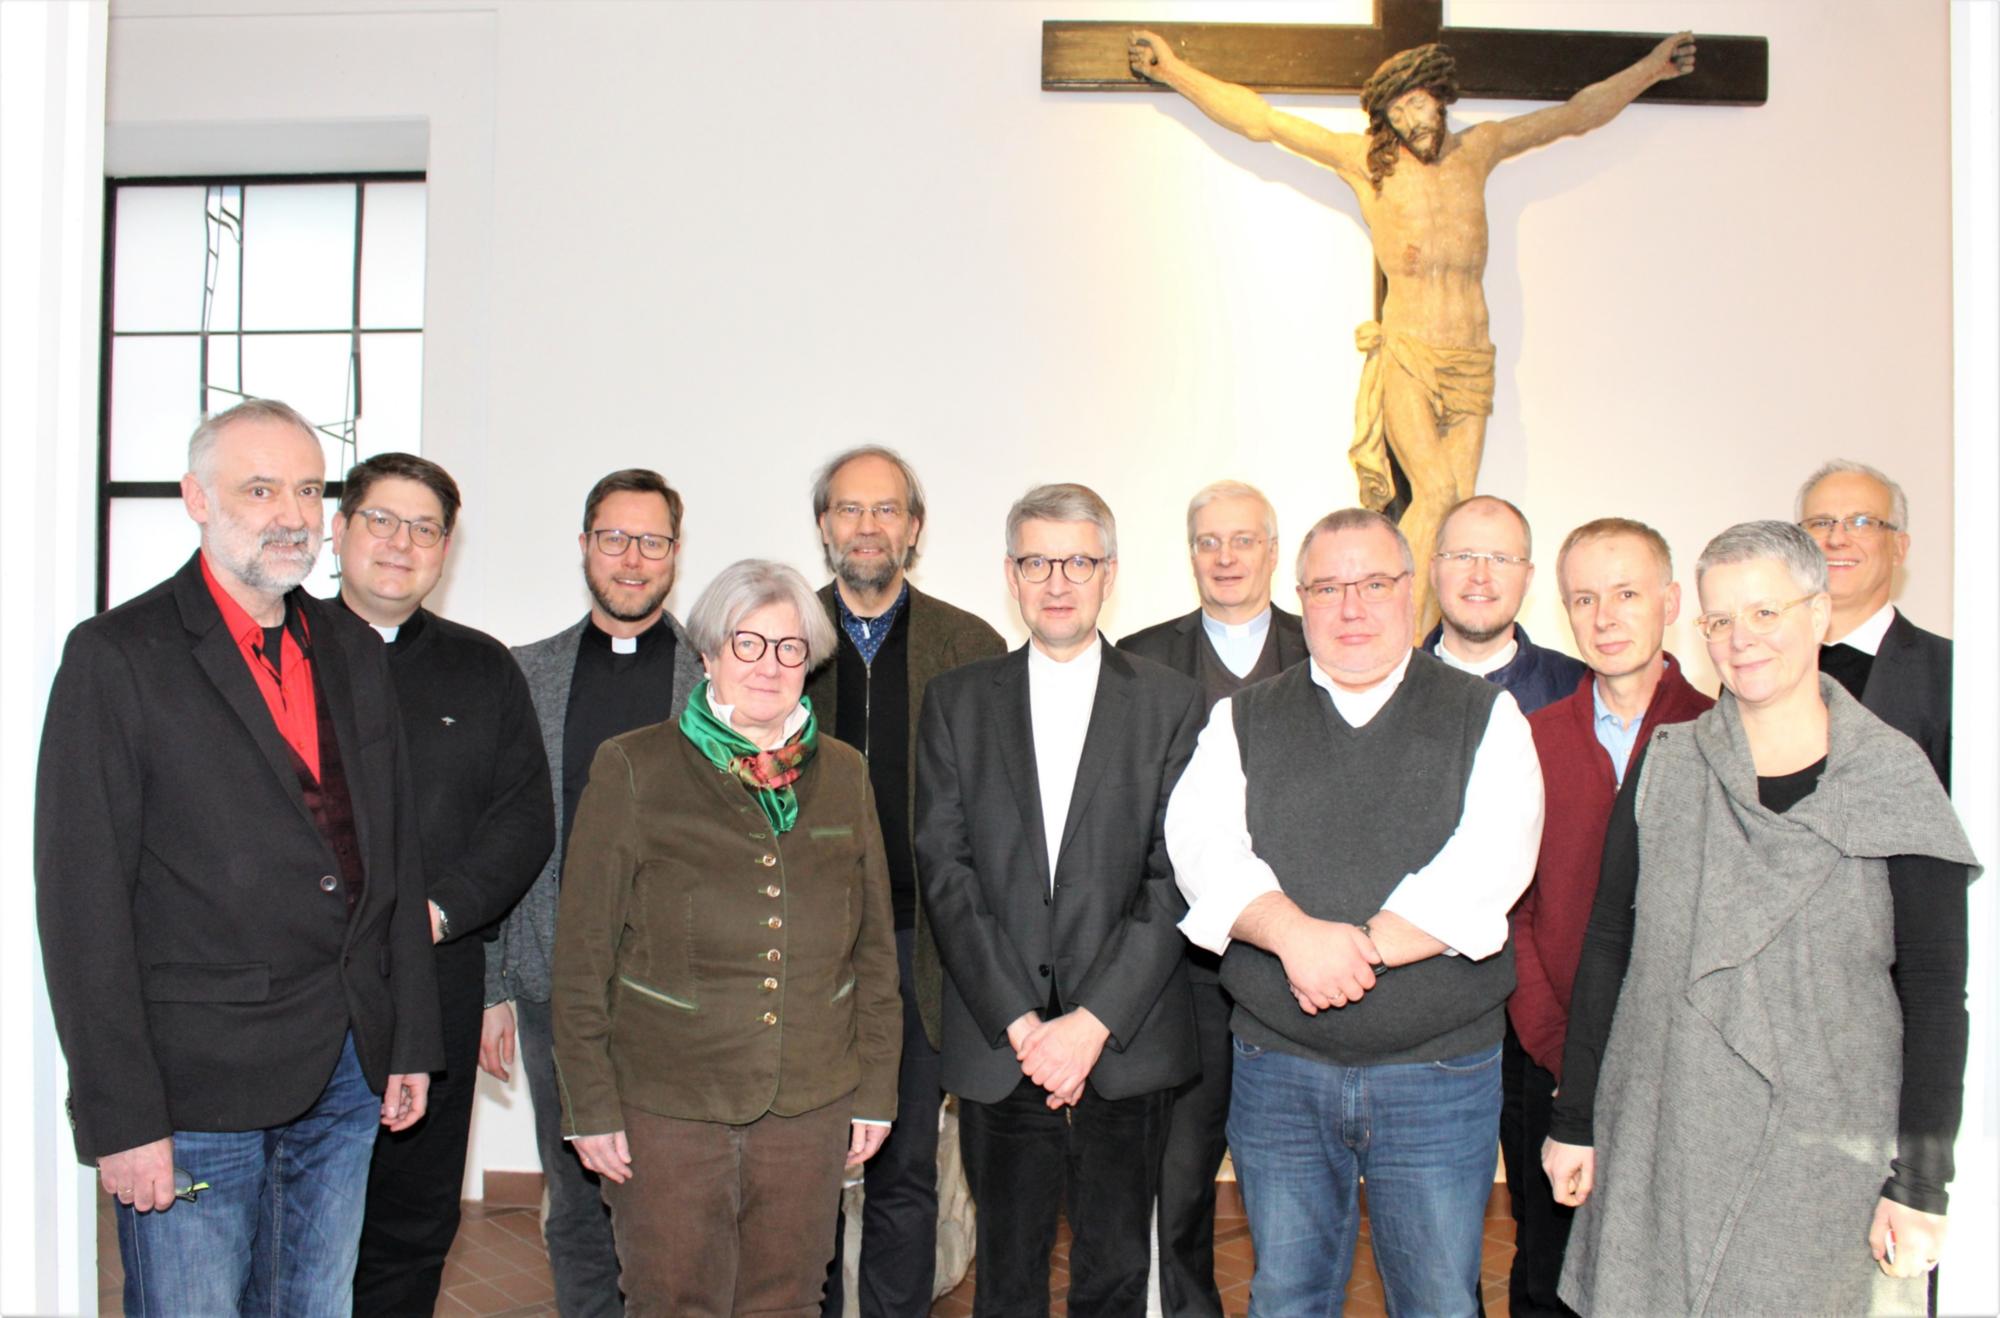 Mainz, 7. Februar 2020: Die Mitglieder des neuen Diakonenrates trafen sich mit Bischof Peter Kohlgraf im Priesterseminar zu ihrer ersten Sitzung. (c) Bistum Mainz / Blum